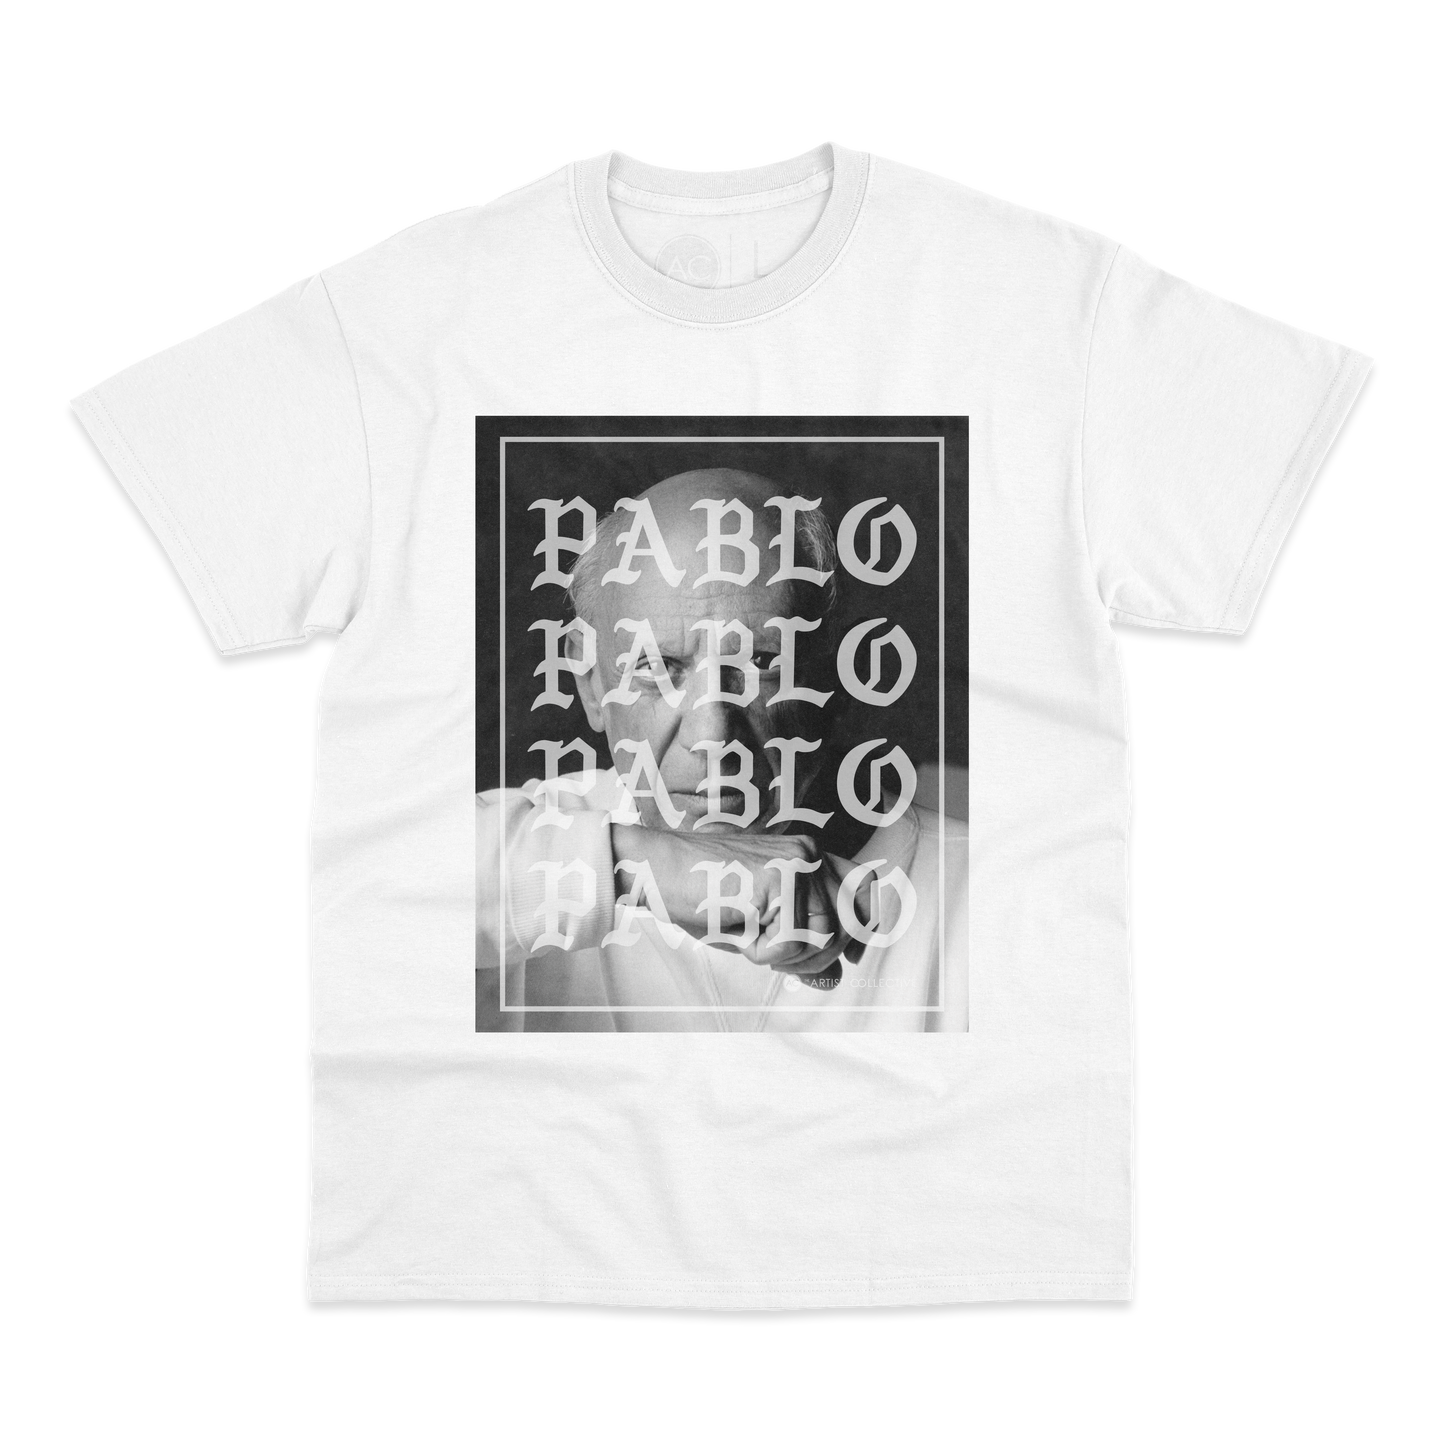 Mature Pablo Tee Shirt - White